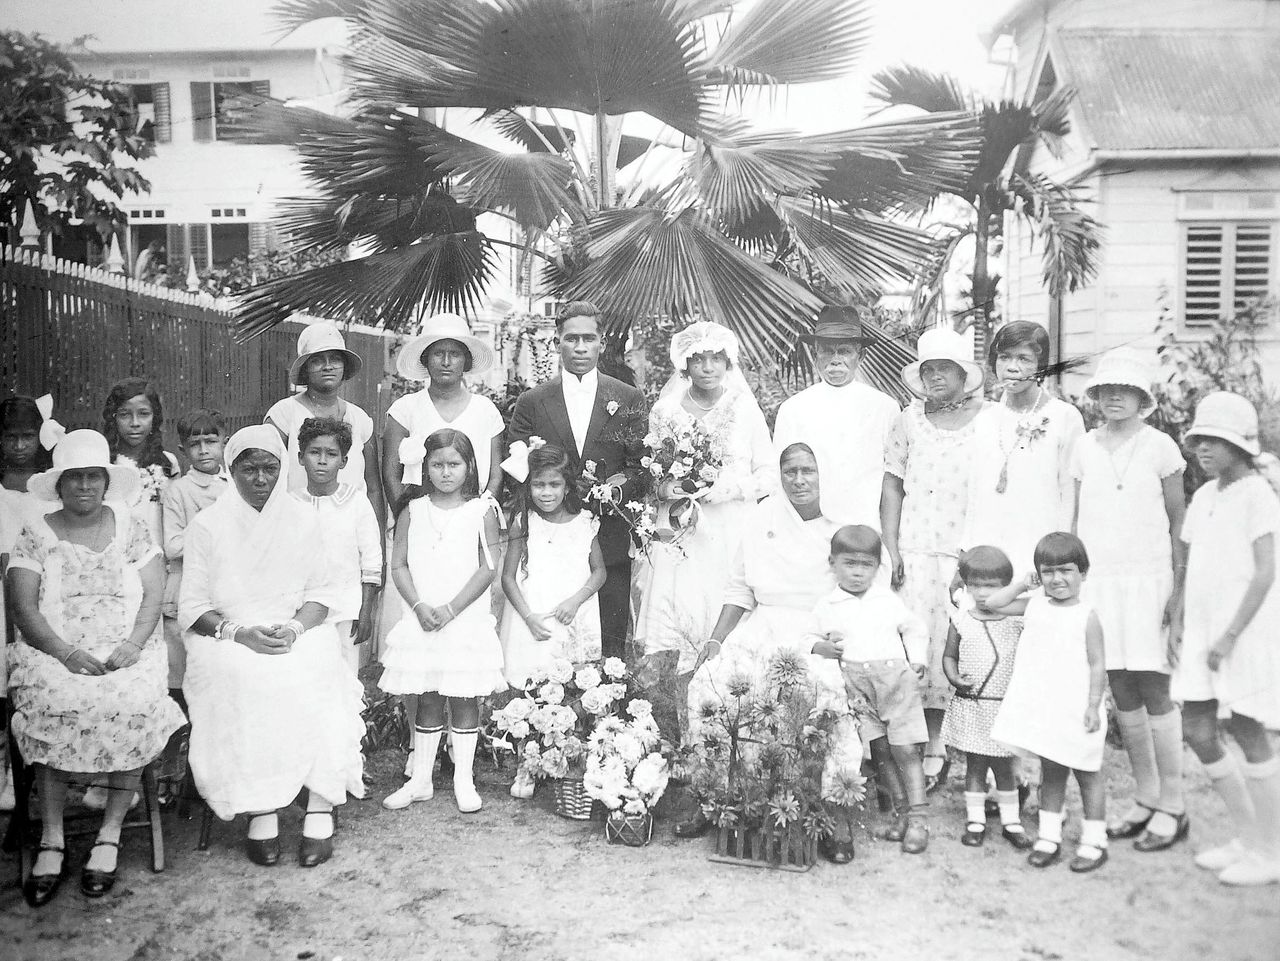 Mooie foto-expositie van bruidsparen in Suriname 